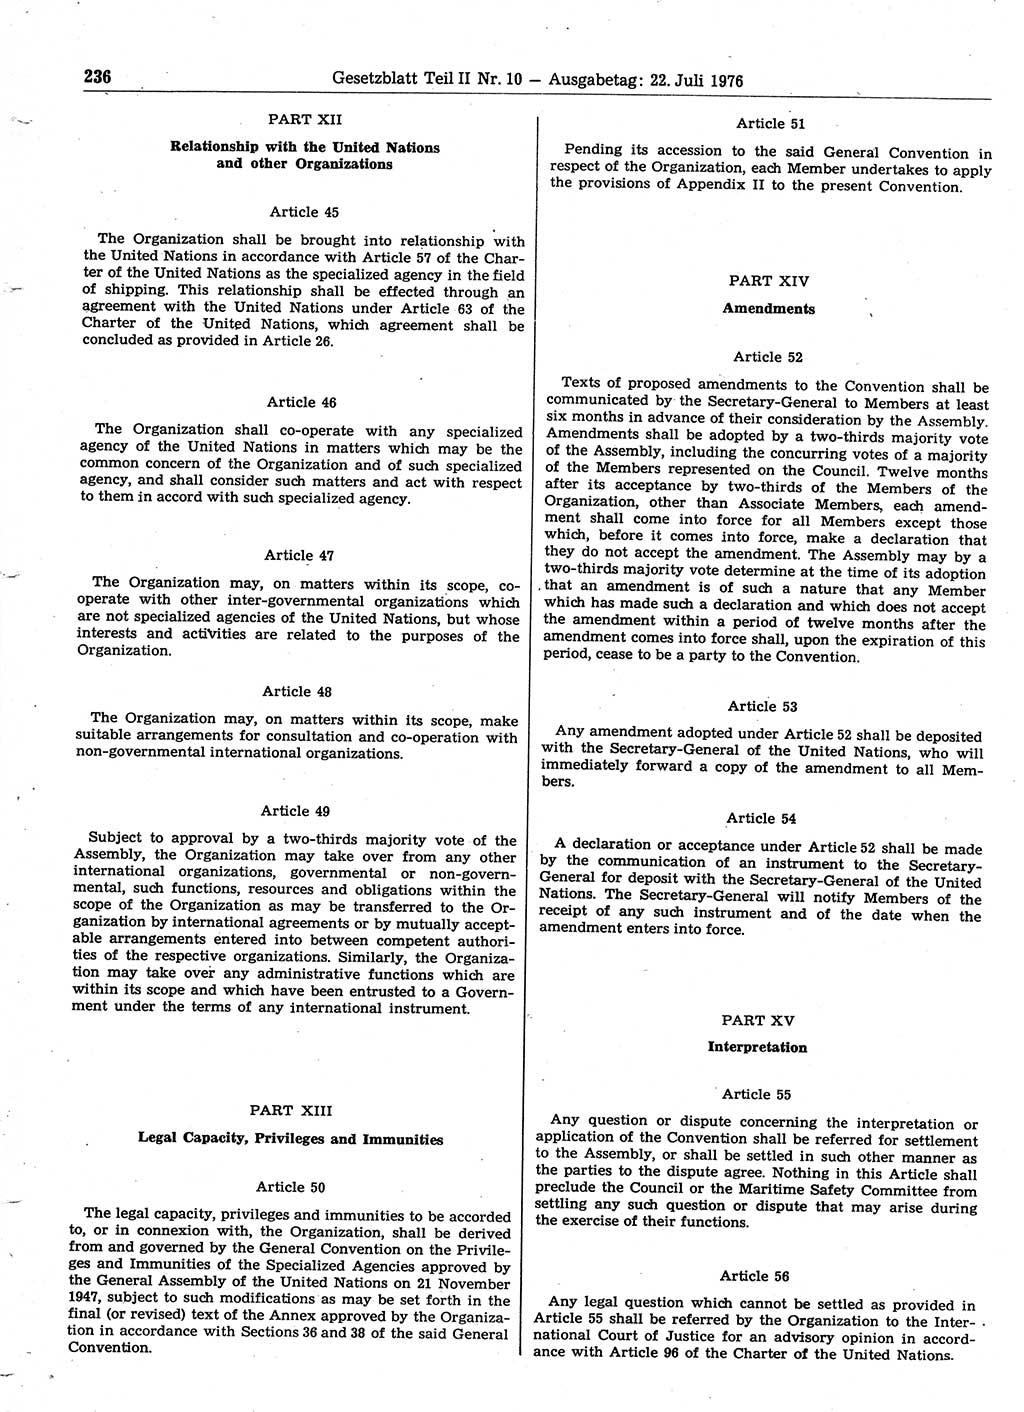 Gesetzblatt (GBl.) der Deutschen Demokratischen Republik (DDR) Teil ⅠⅠ 1976, Seite 236 (GBl. DDR ⅠⅠ 1976, S. 236)